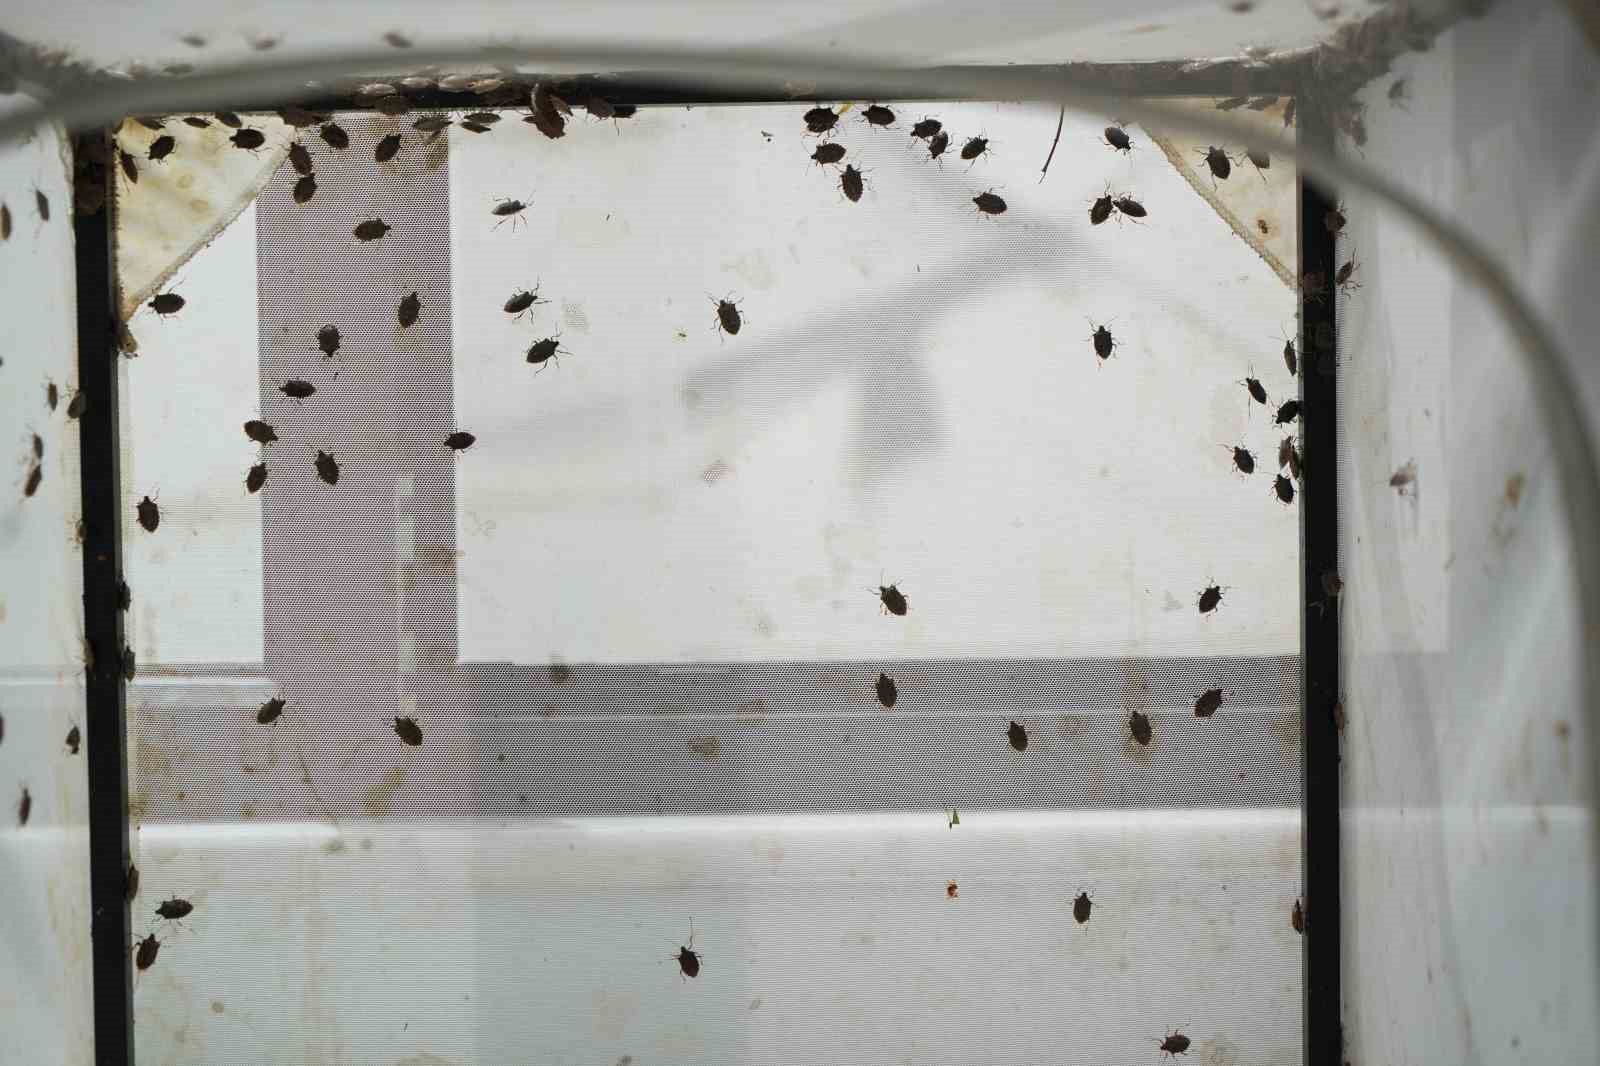 150 bin samuray arısı kahverengi kokarca ile mücadele edecek
